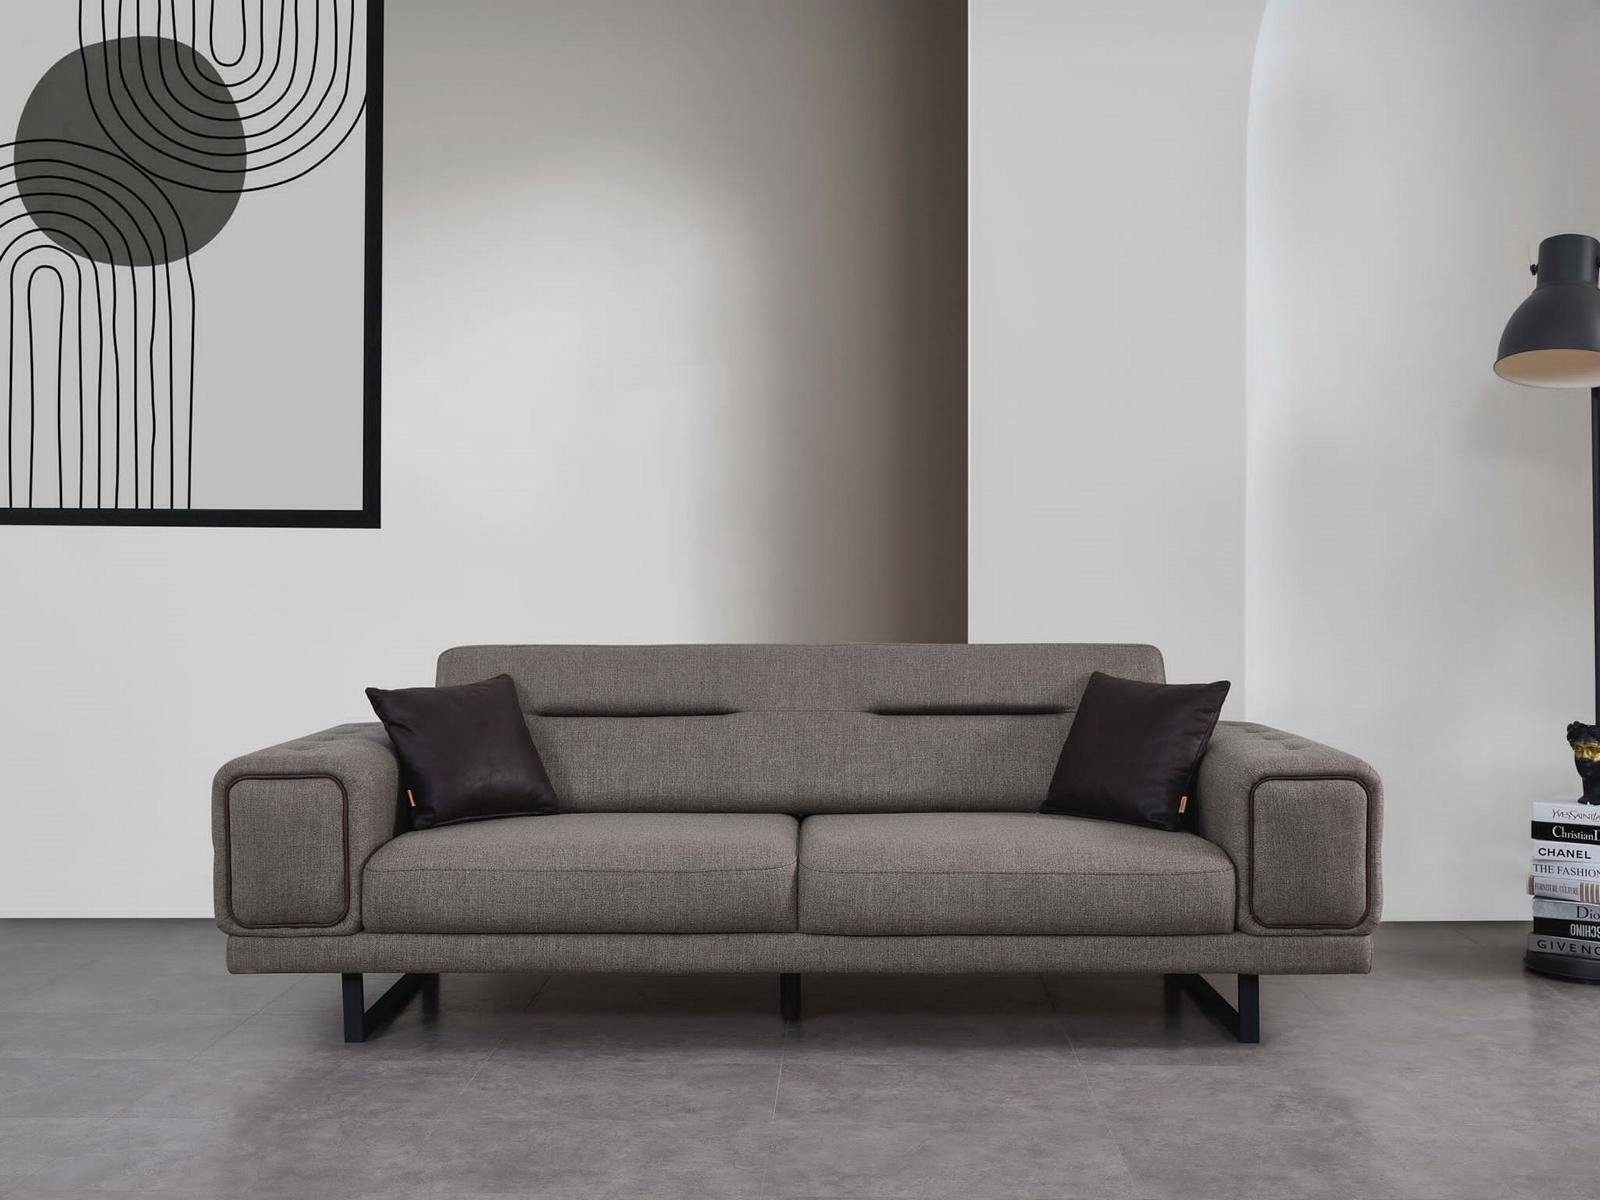 Dreisitzer Luxus Sofas Wohnzimmer Sofa Modern Europa JVmoebel Teile, Einrichtung Made Sofa Neu Design, 1 in